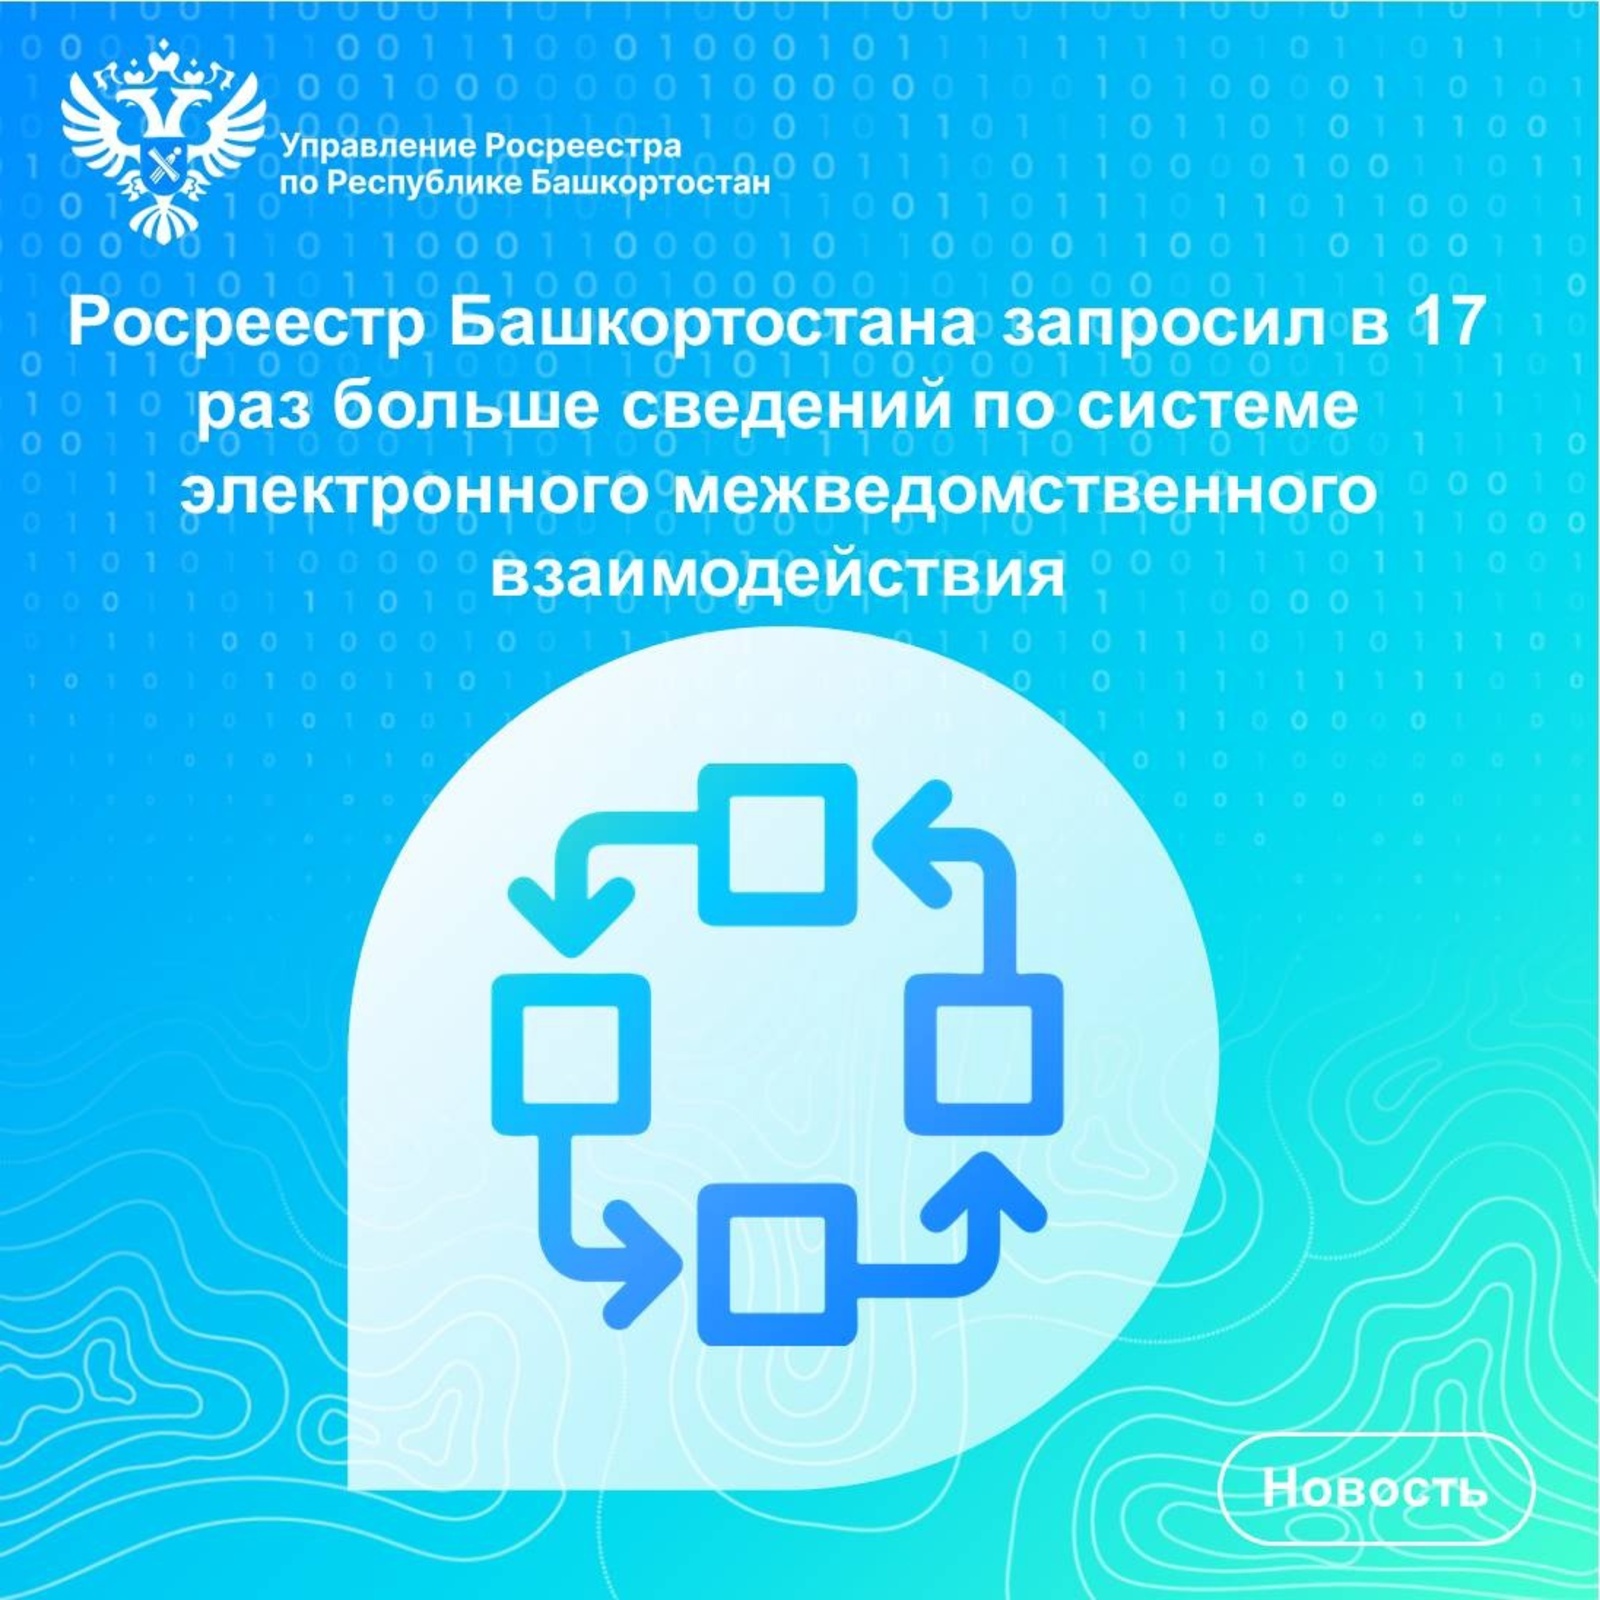 В текущем году Росреестр Башкортостана запросил в 17 раз больше сведений по системе электронного межведомственного взаимодействия